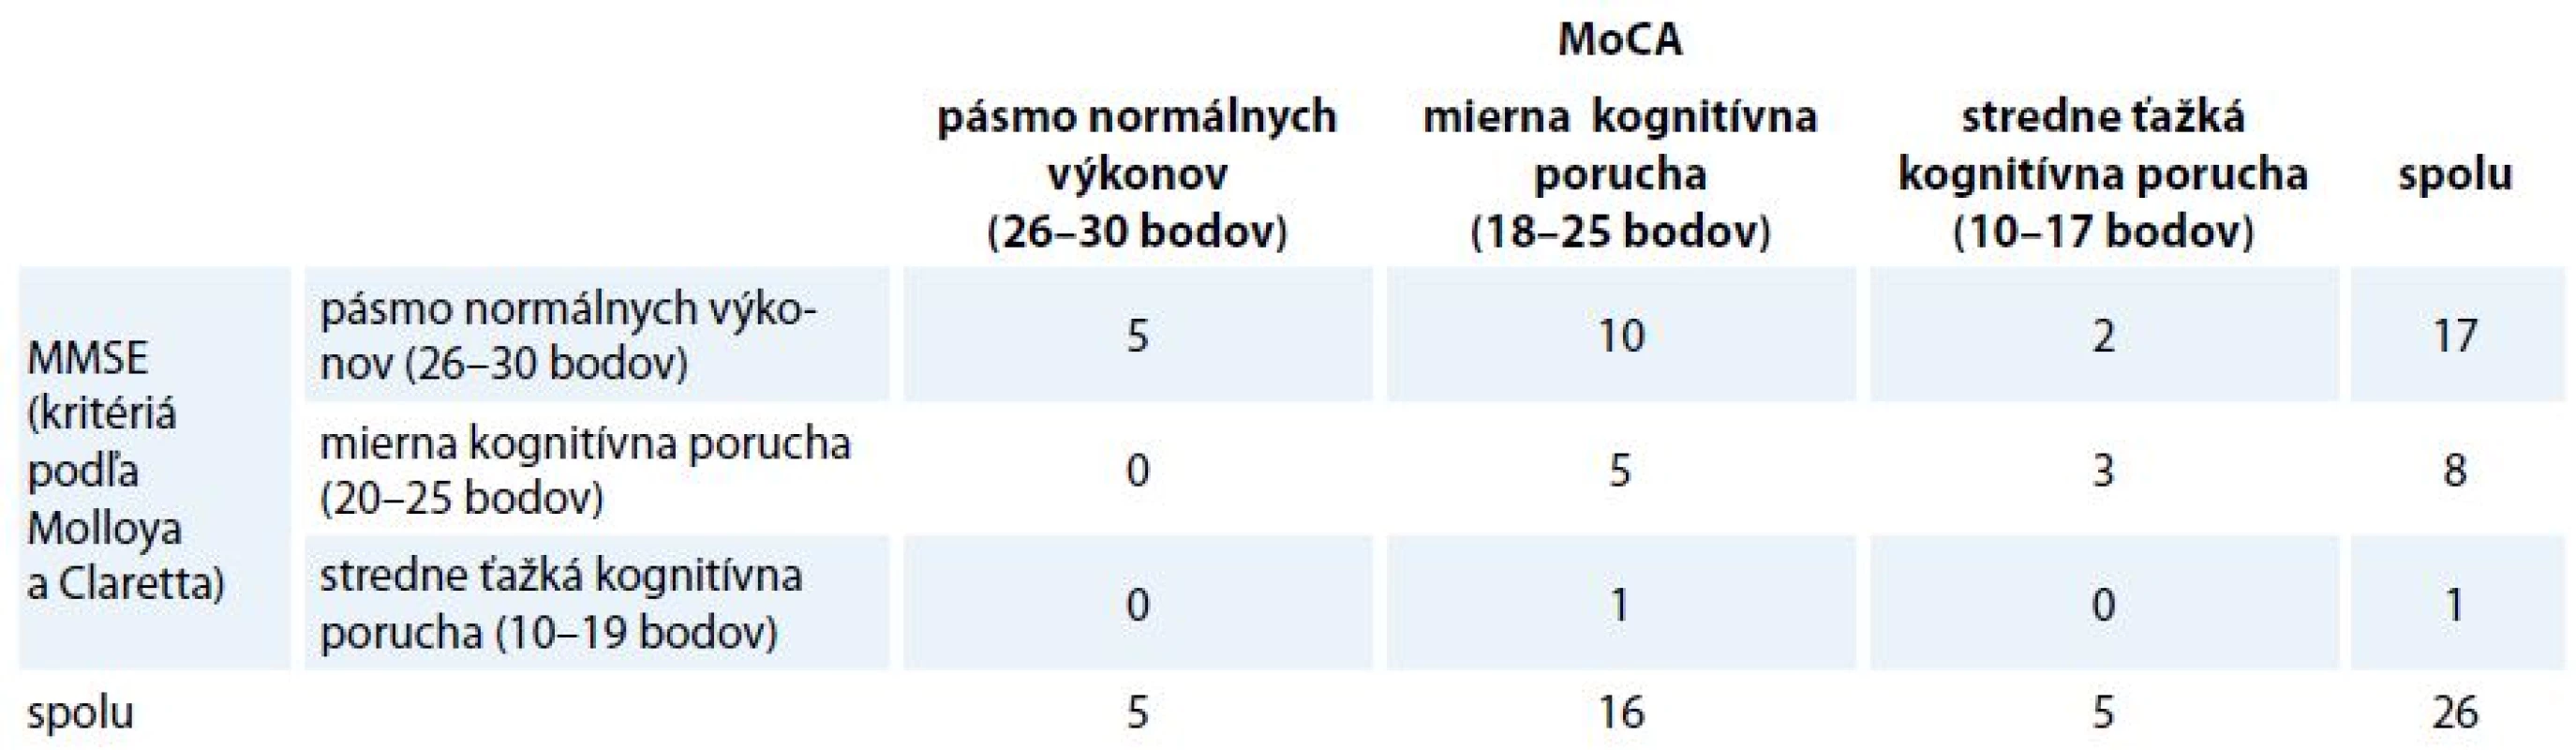 Distribúcia participantov v kategóriách podľa MMSE a MoCA.